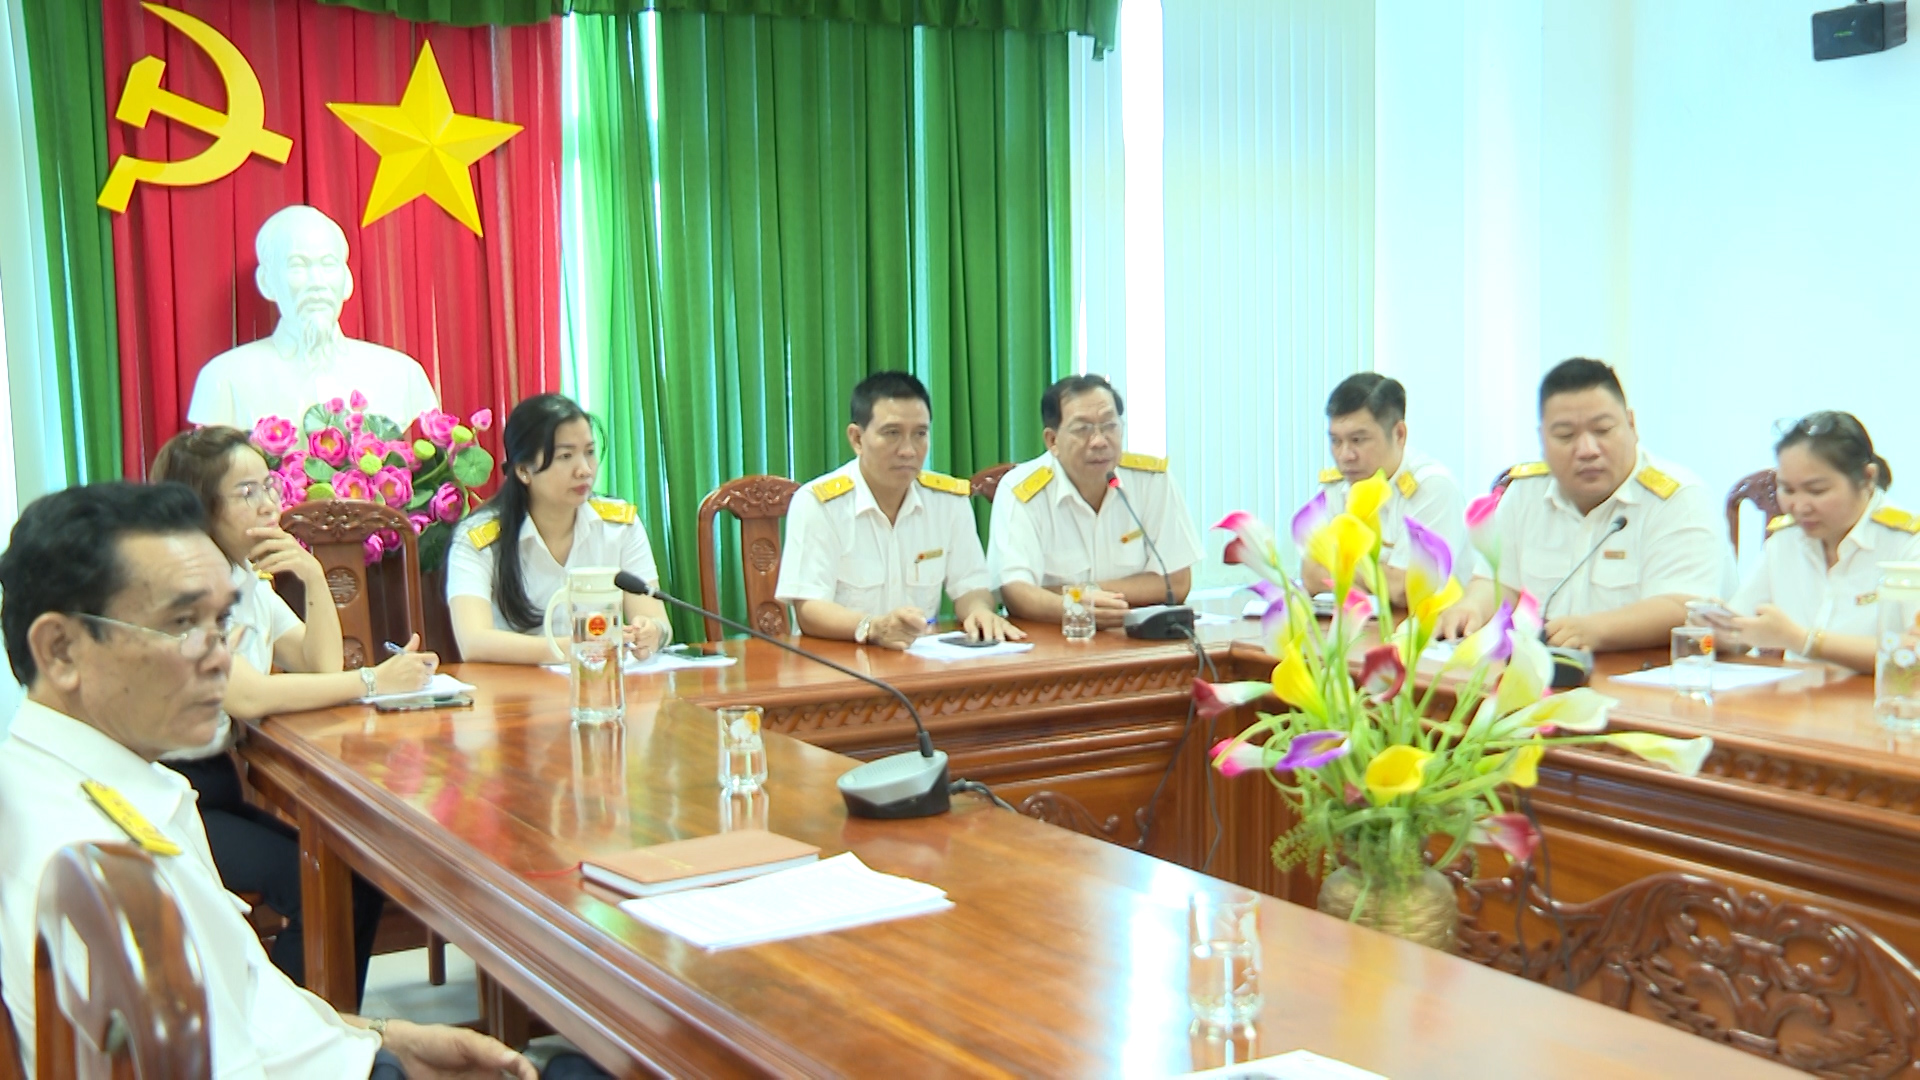 Hình 4: Đại diện Chi cục Thuế quận Ninh Kiều giải đáp các câu hỏi, thắc mắc của các doanh nghiệp, cơ sở sản xuất, kinh doanh… về thuế